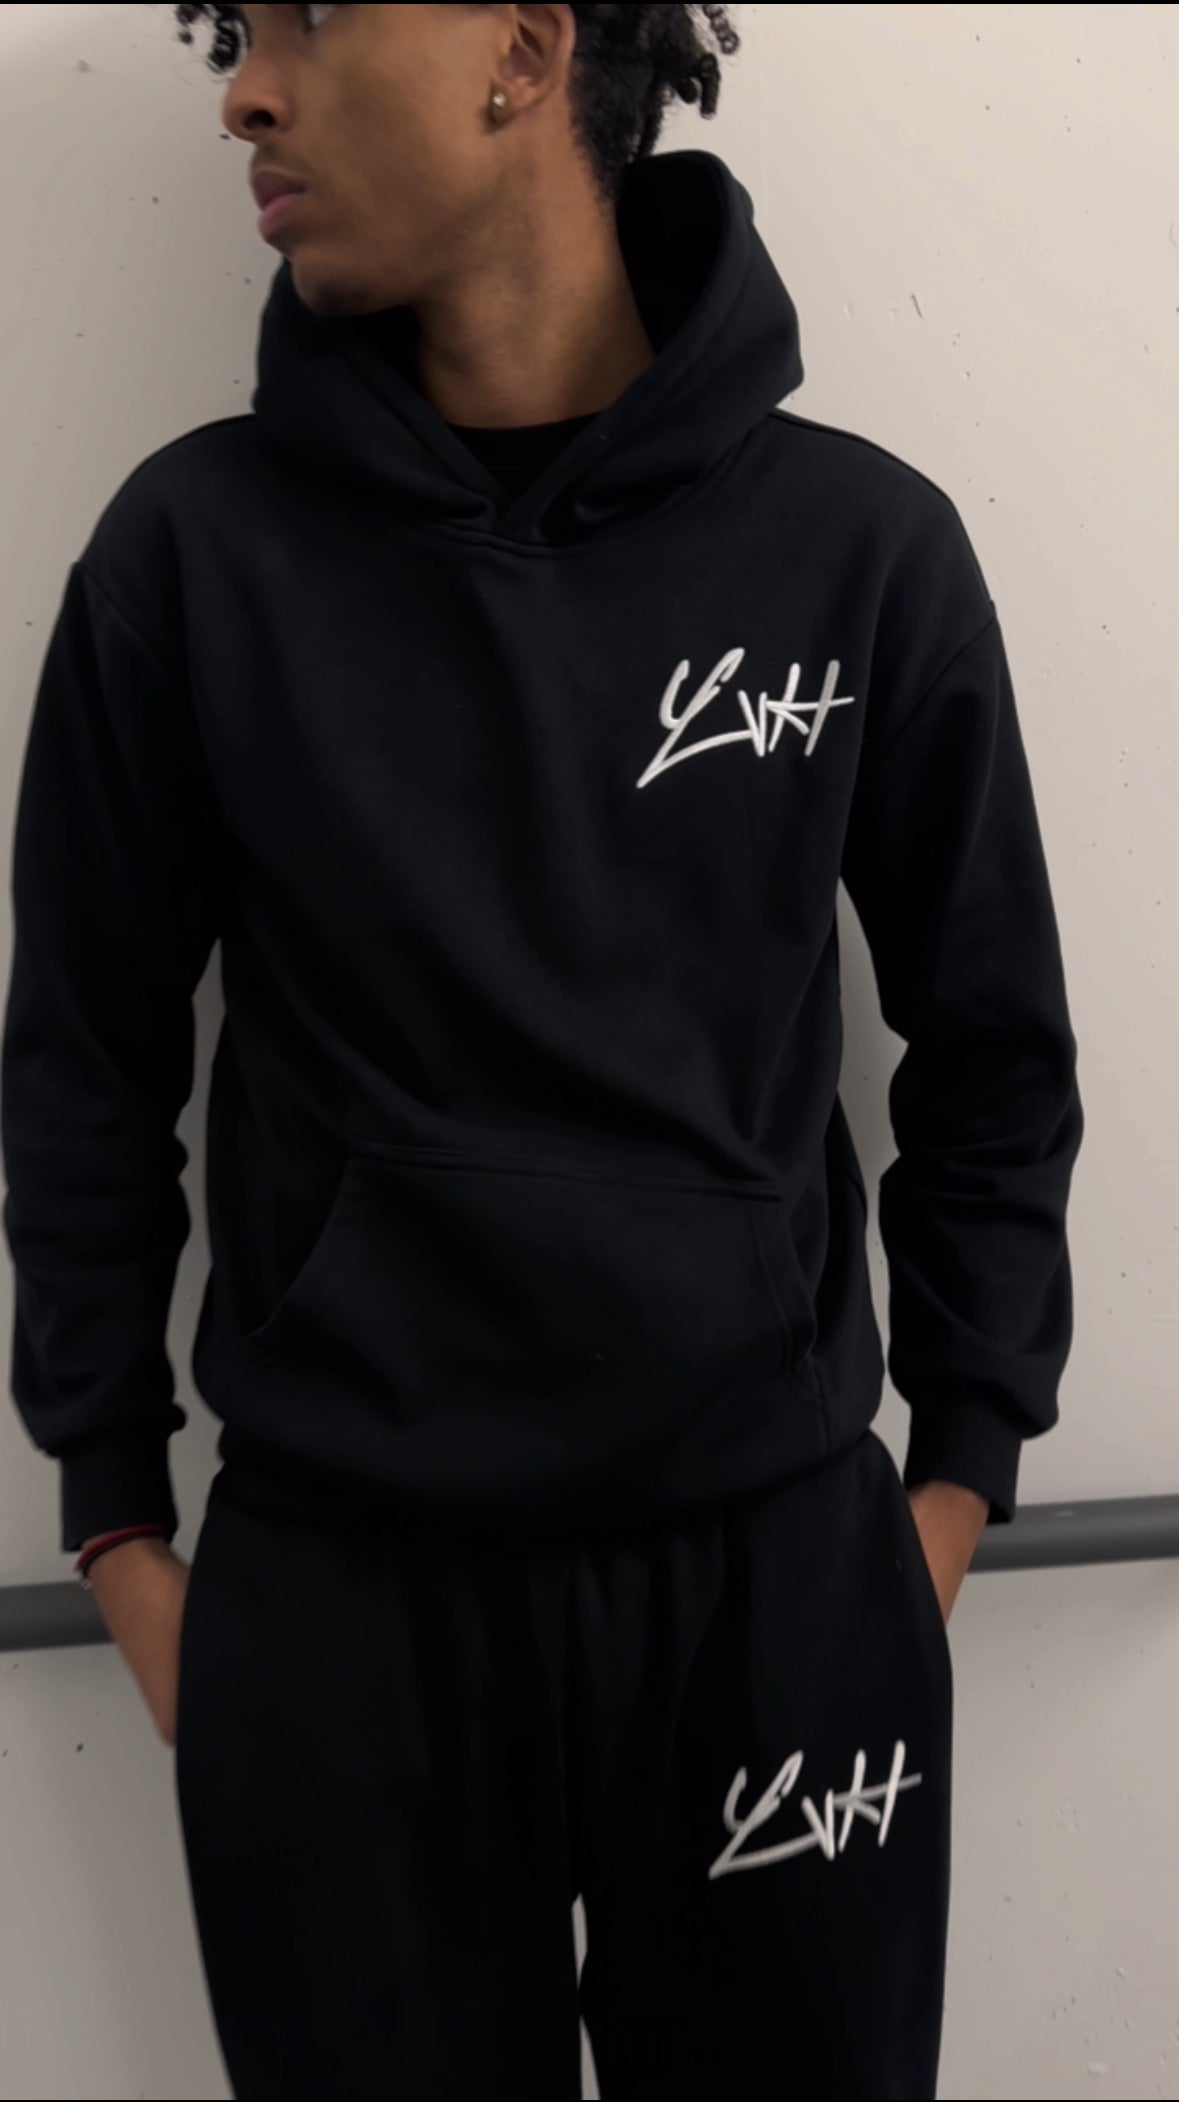 LVH hoodie black